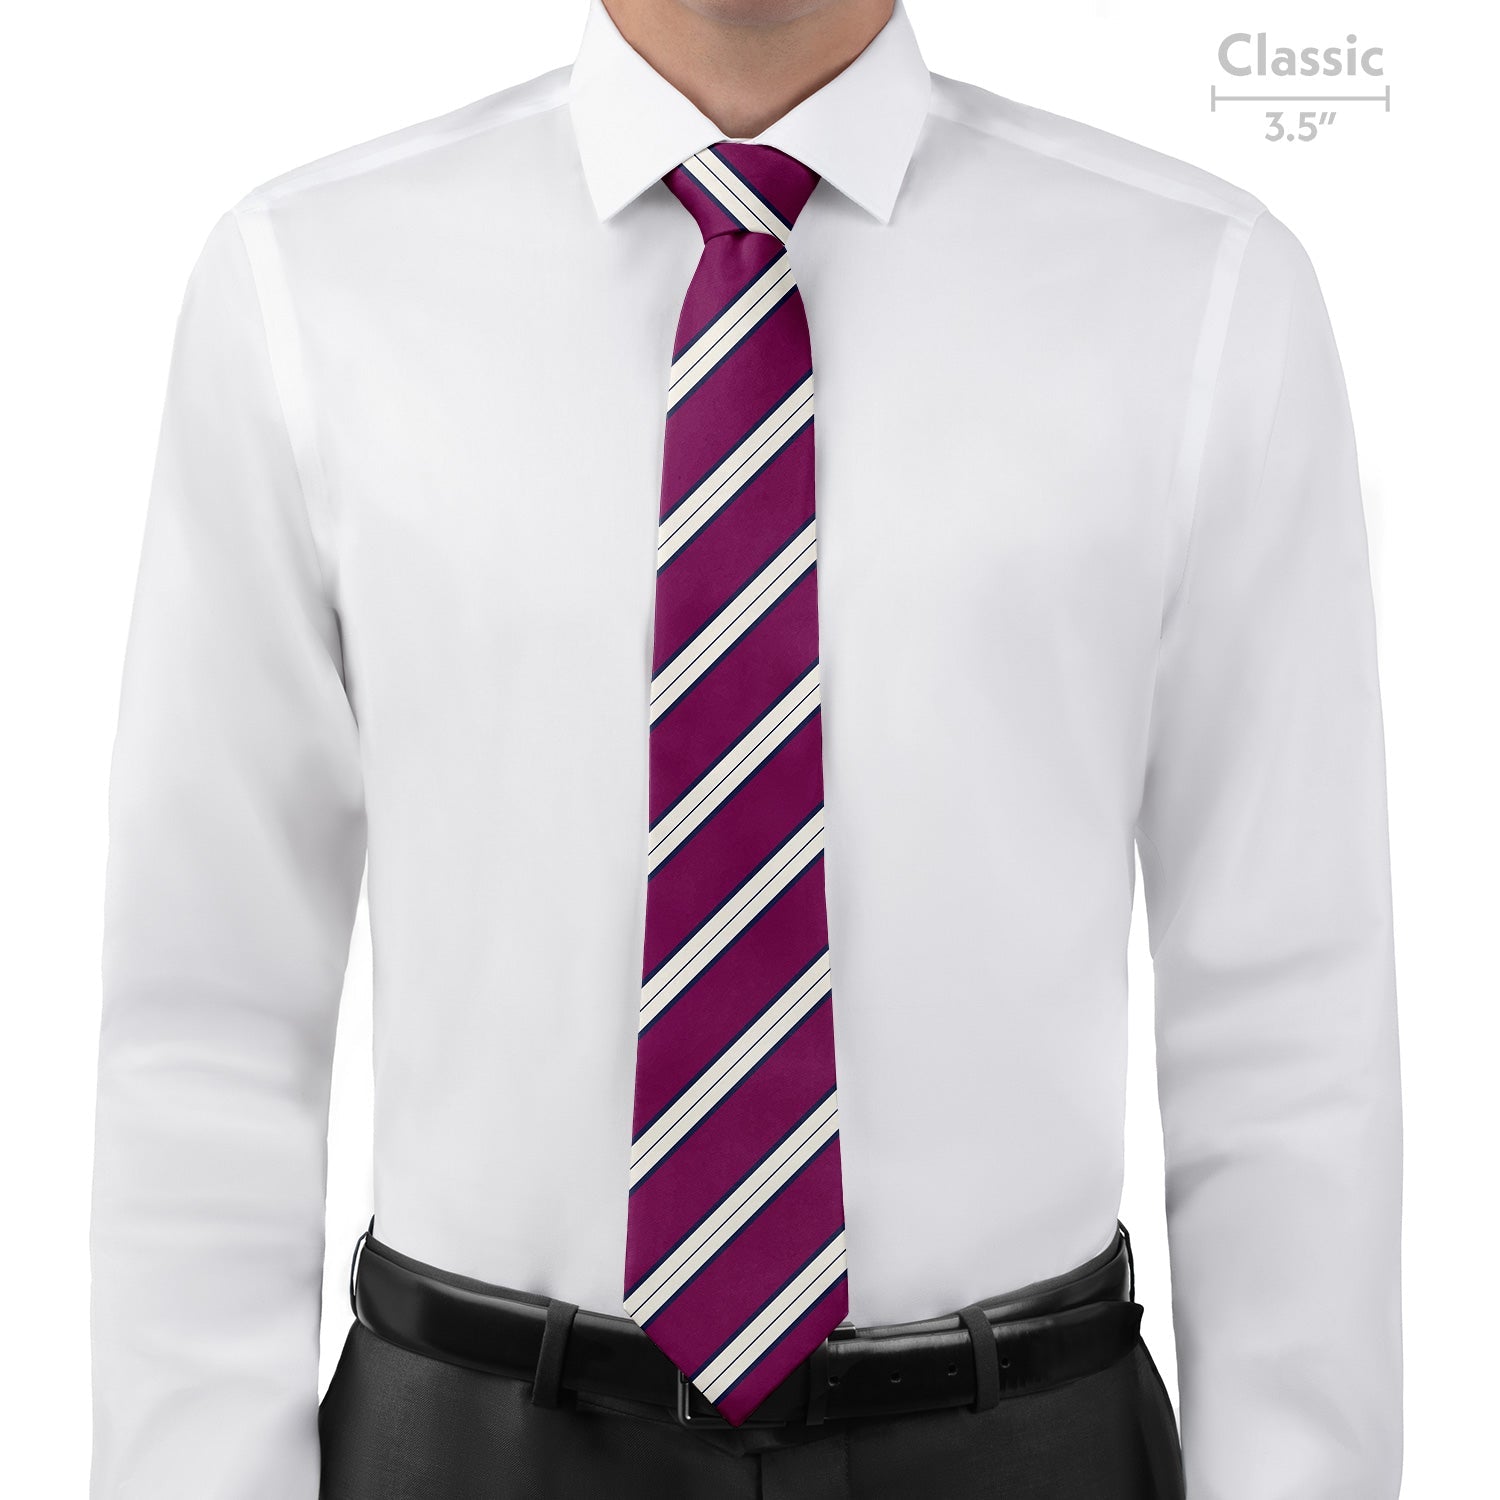 Kalamath Stripe Necktie - Classic - Knotty Tie Co.